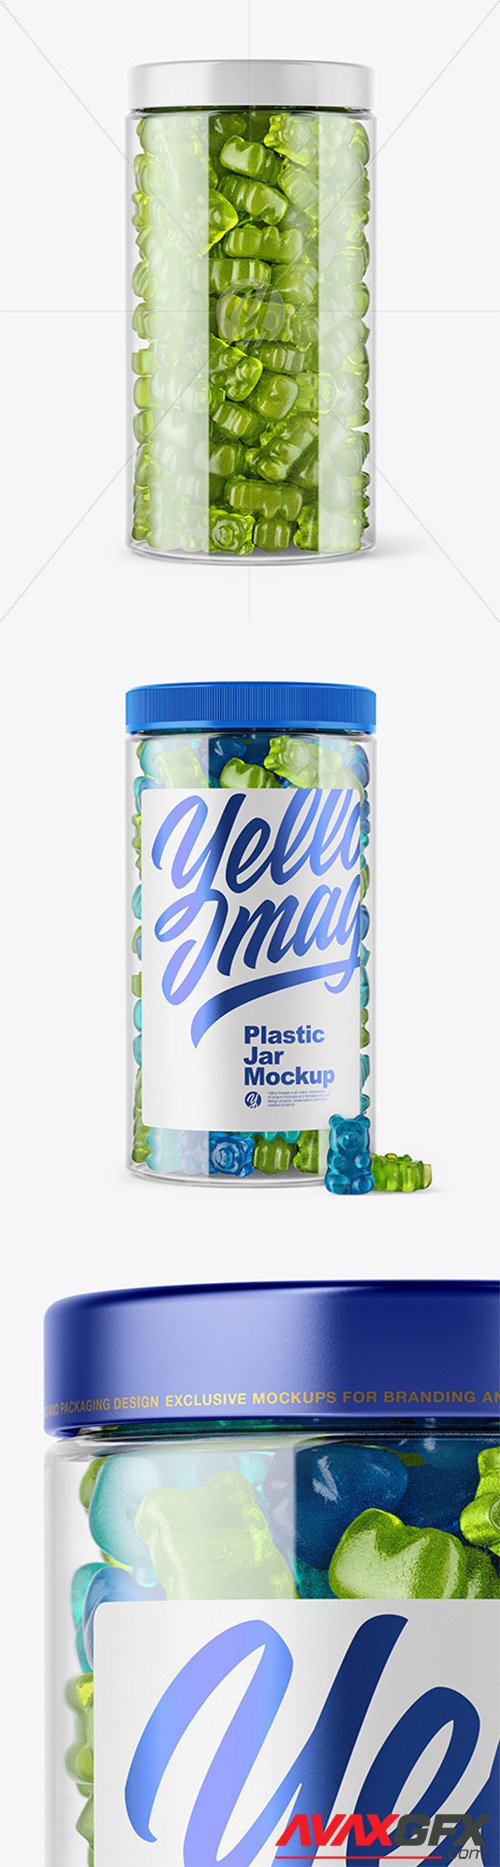 Plastic Jar with Gummies Mockup 44817